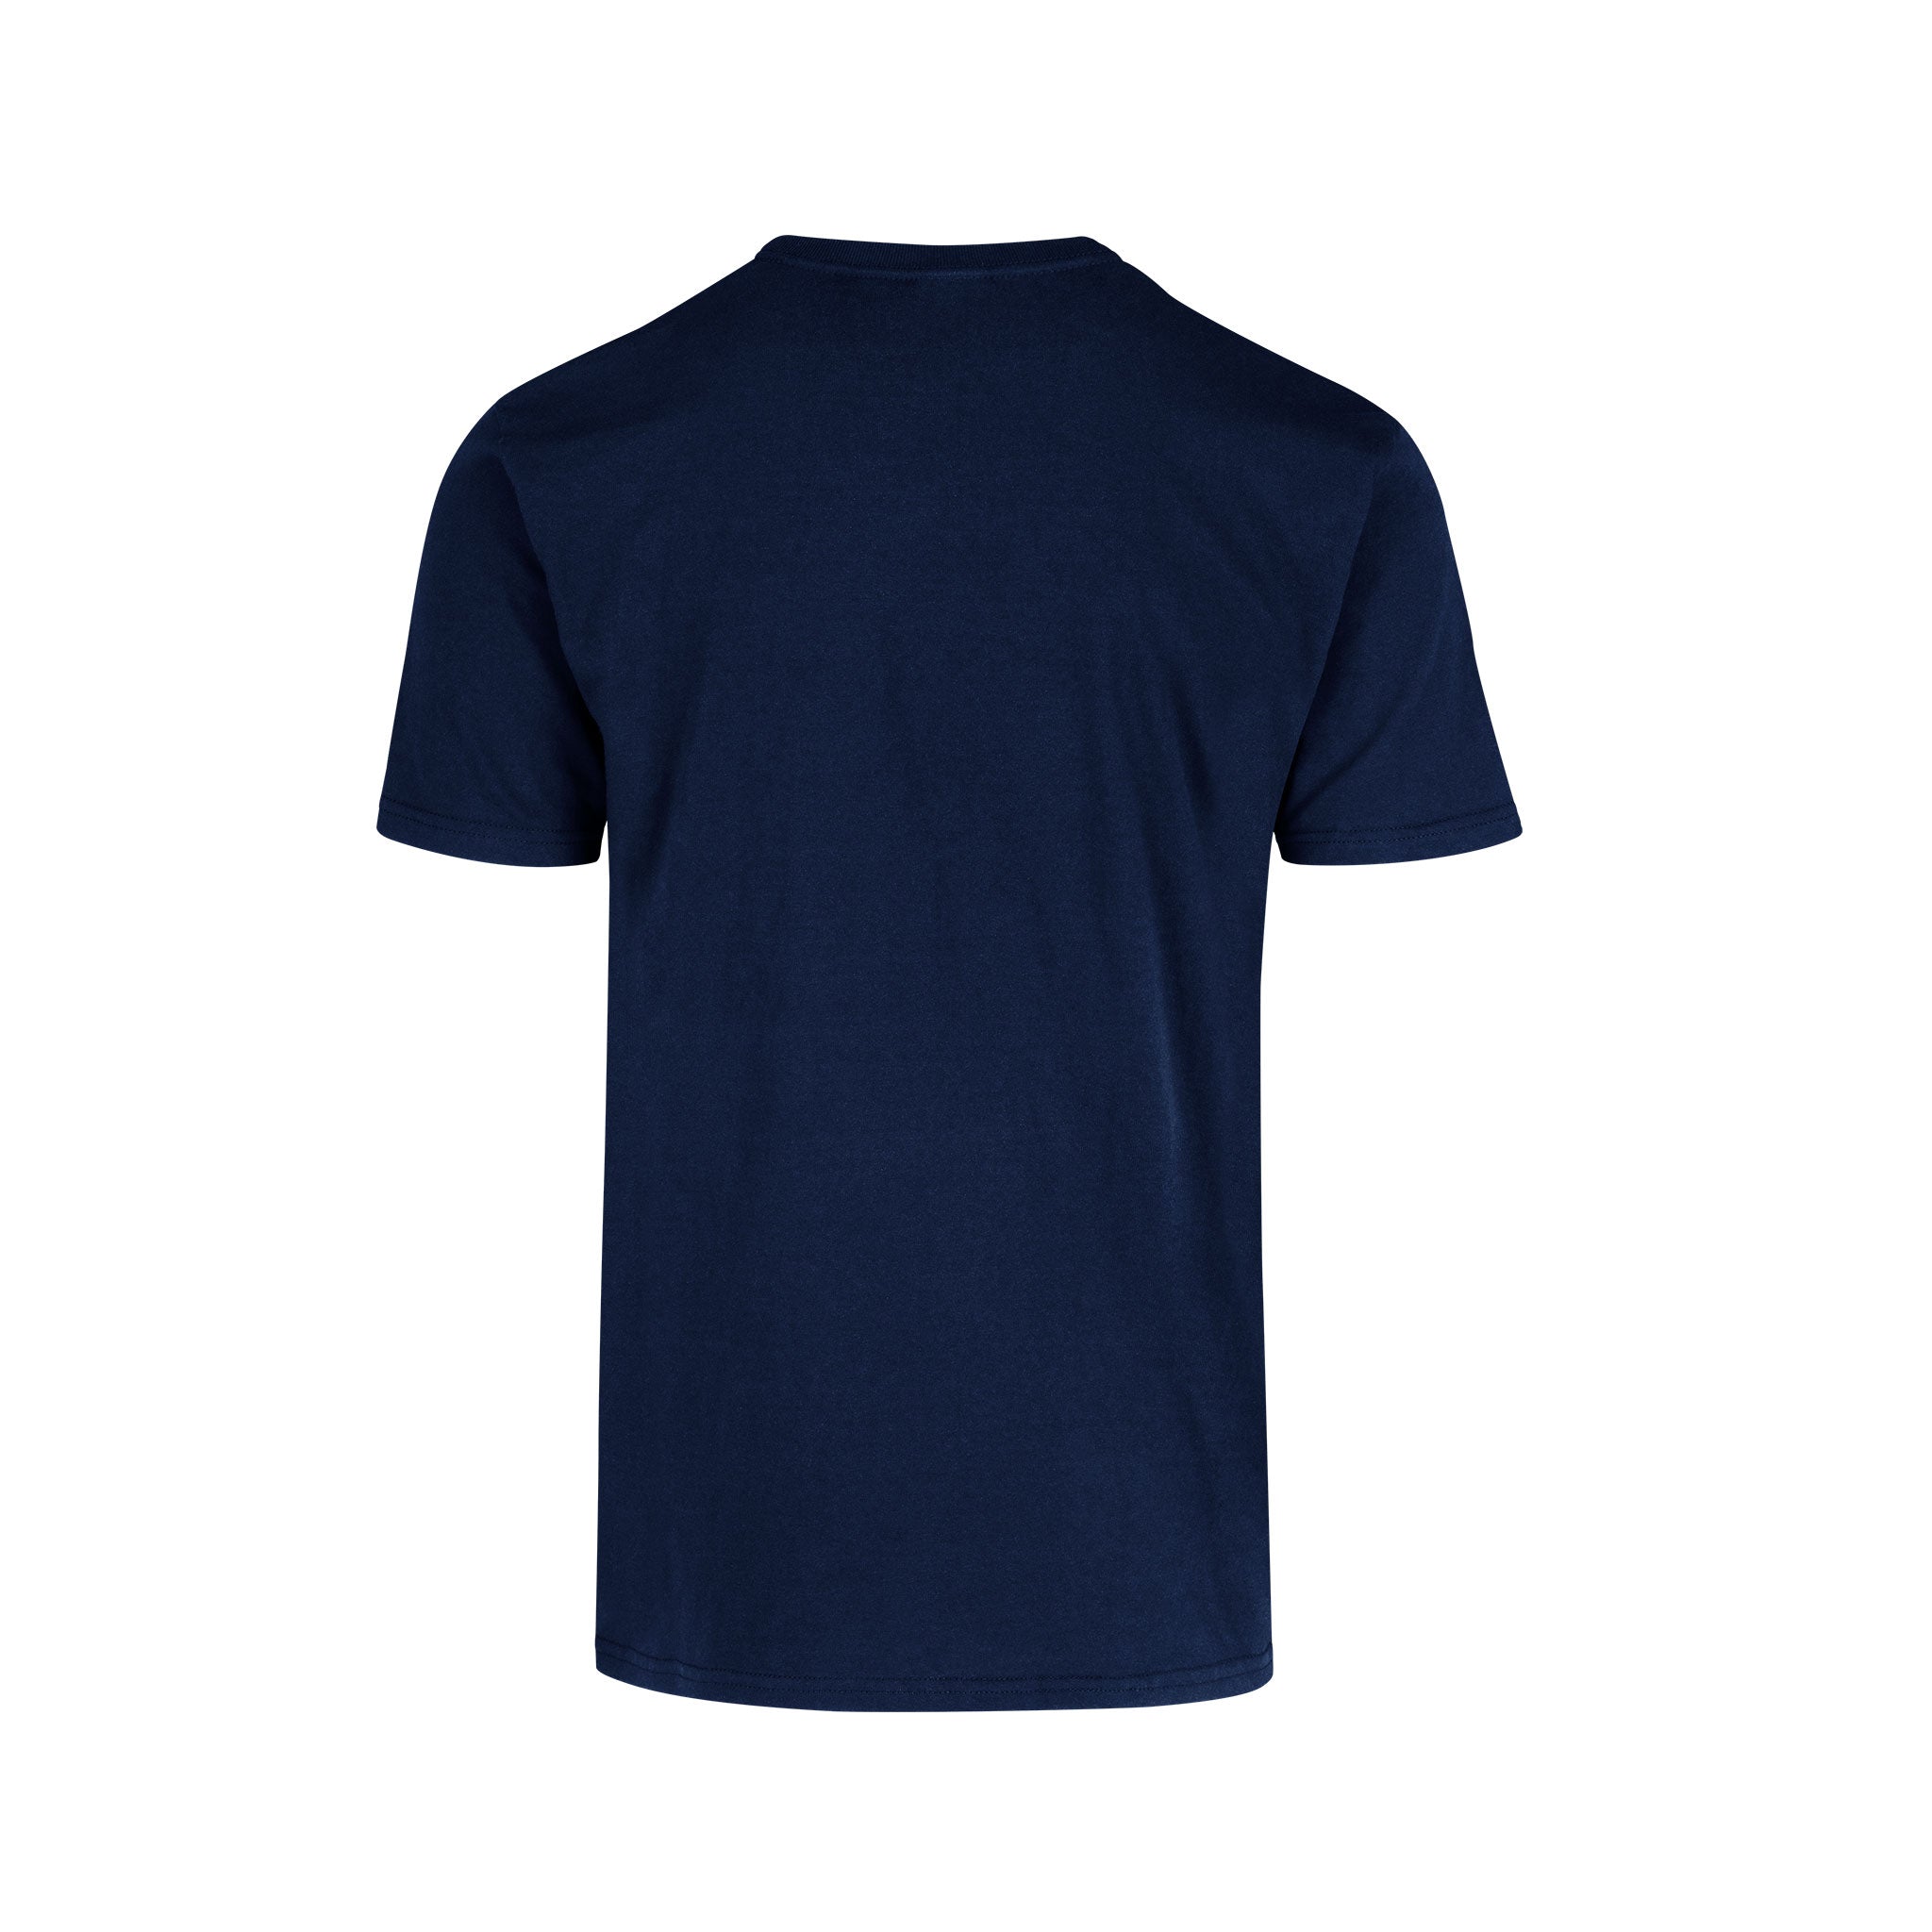 Men's Crew Neck Short Sleeve T-Shirt (Navy) – Yazbek USA Mint